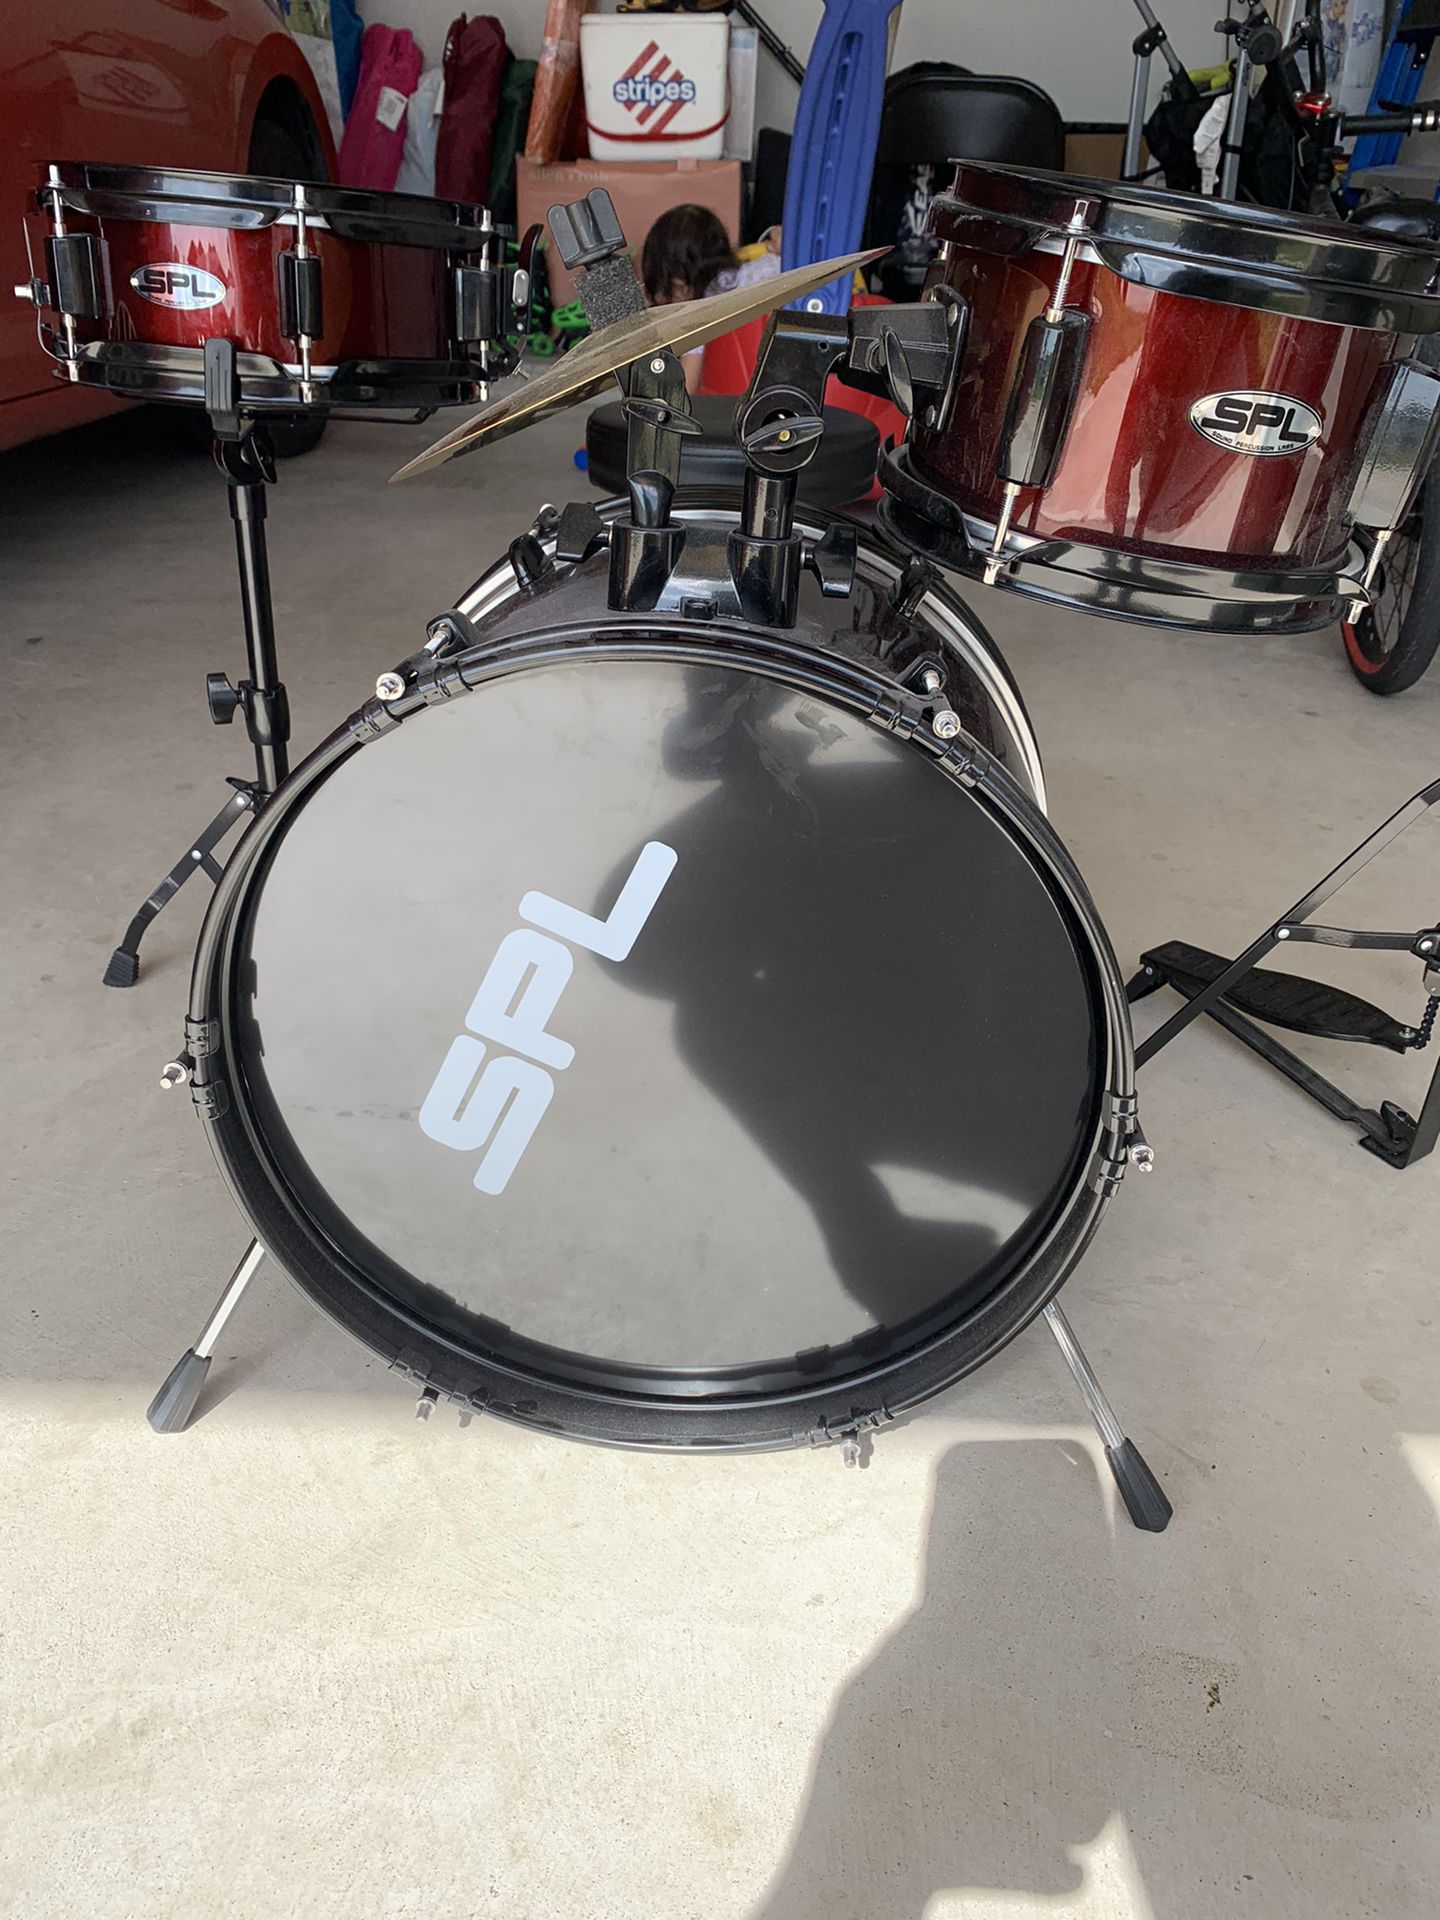 SPL drumset